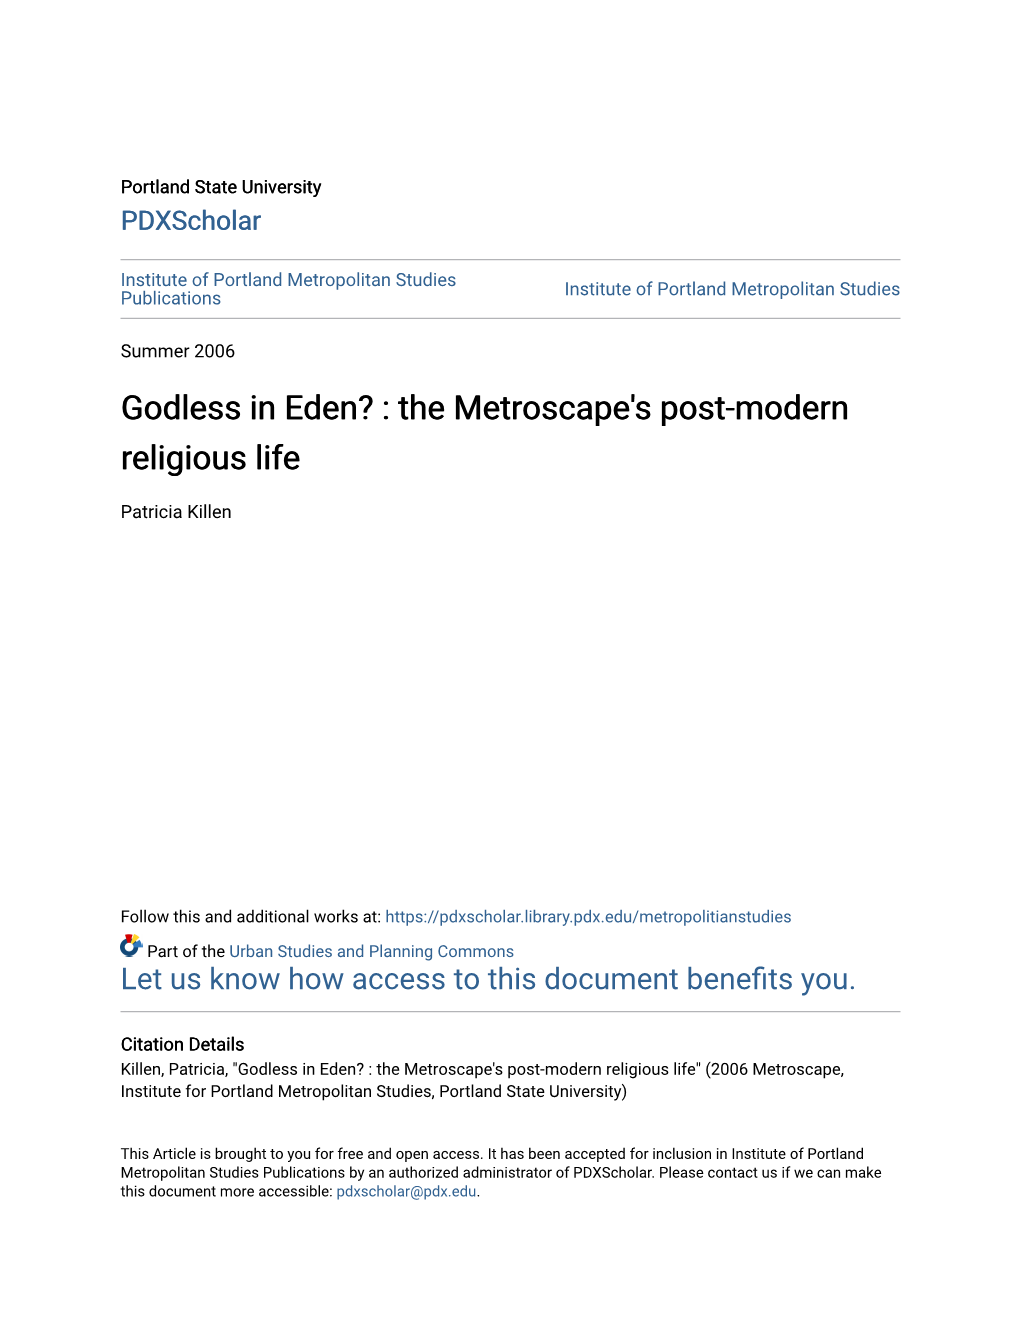 Godless in Eden? : the Metroscape's Post-Modern Religious Life